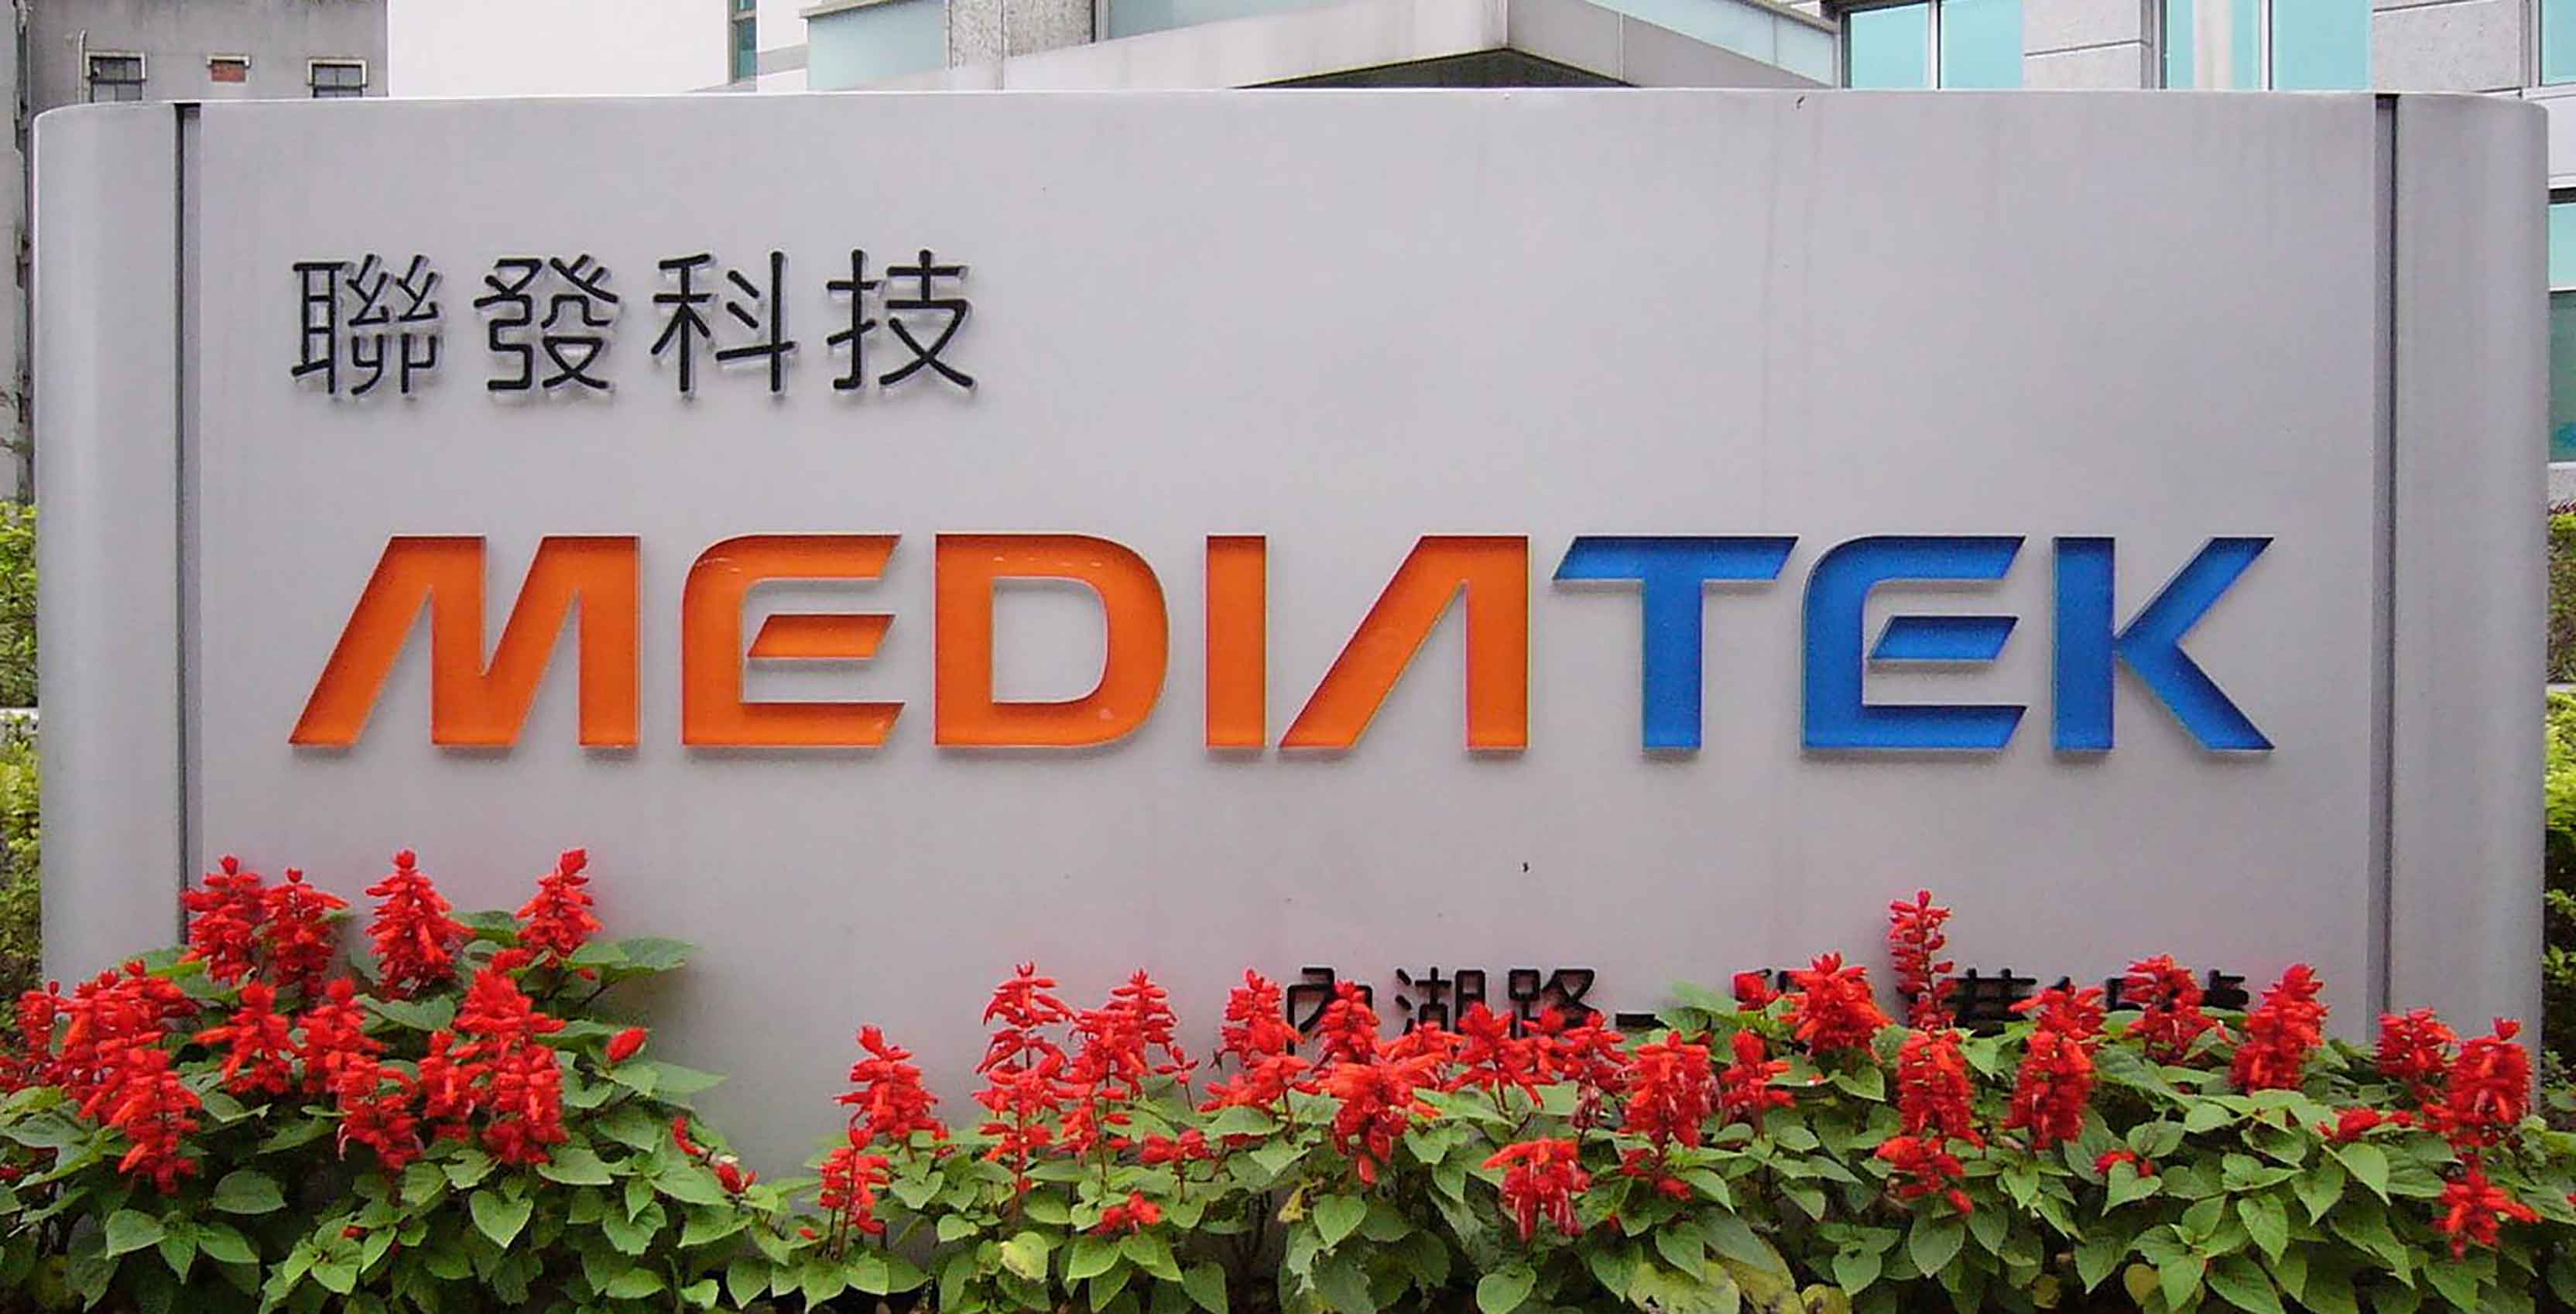 MediaTek sign